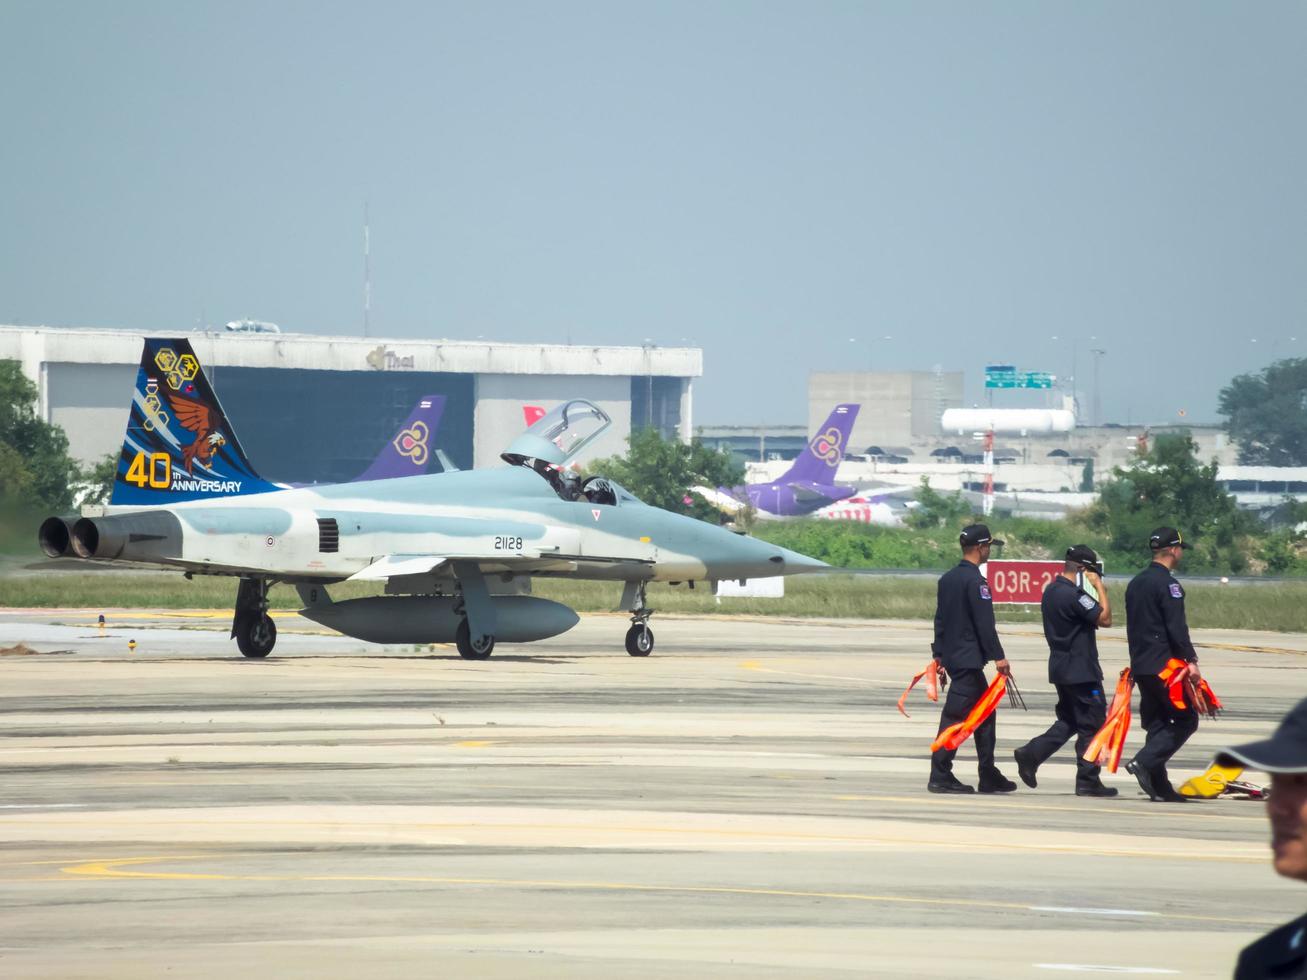 força aérea tailandesa real don muang bangkok tailândia12 de janeiro de 2019 dia nacional das crianças o show de aeronaves da força aérea real tailandesa e show aéreo. em bangkok tailândia12 de janeiro de 2019. foto